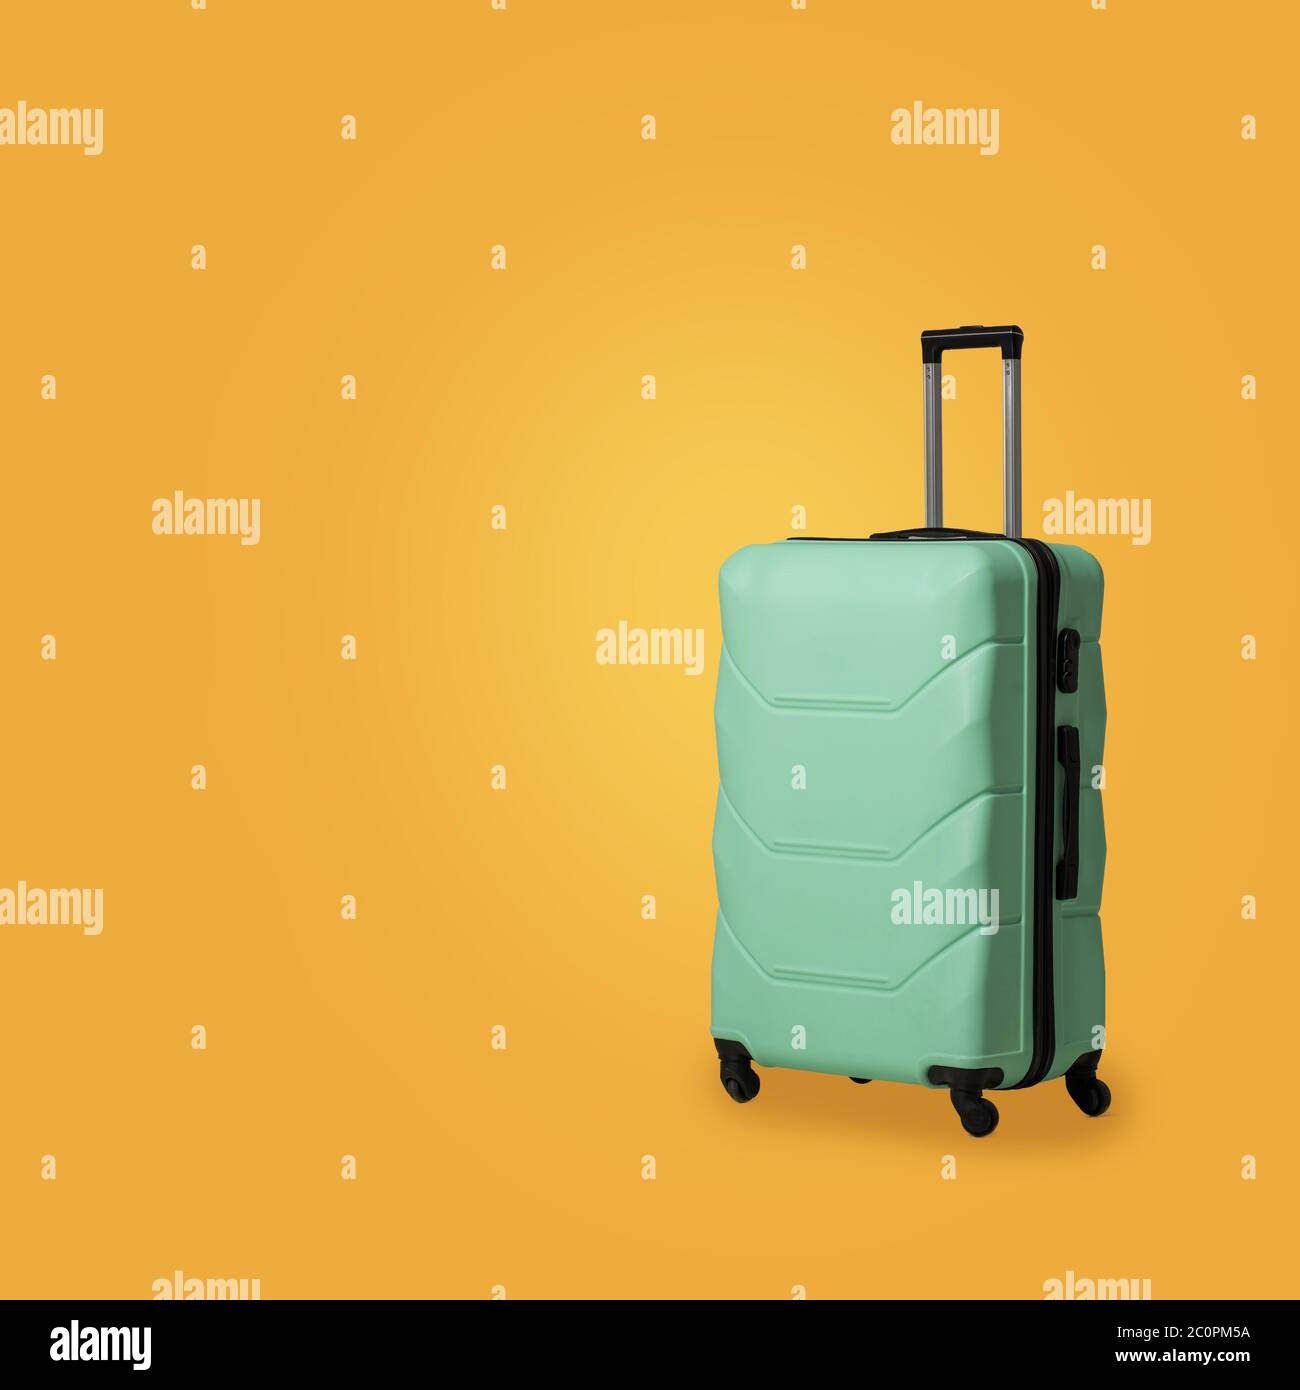 Valise en plastique vert avec roulettes isolées sur fond jaune ensoleillé. Étui en polycarbonate vert menthe pour ranger vos bagages en toute sécurité. Vide ou modèle Banque D'Images